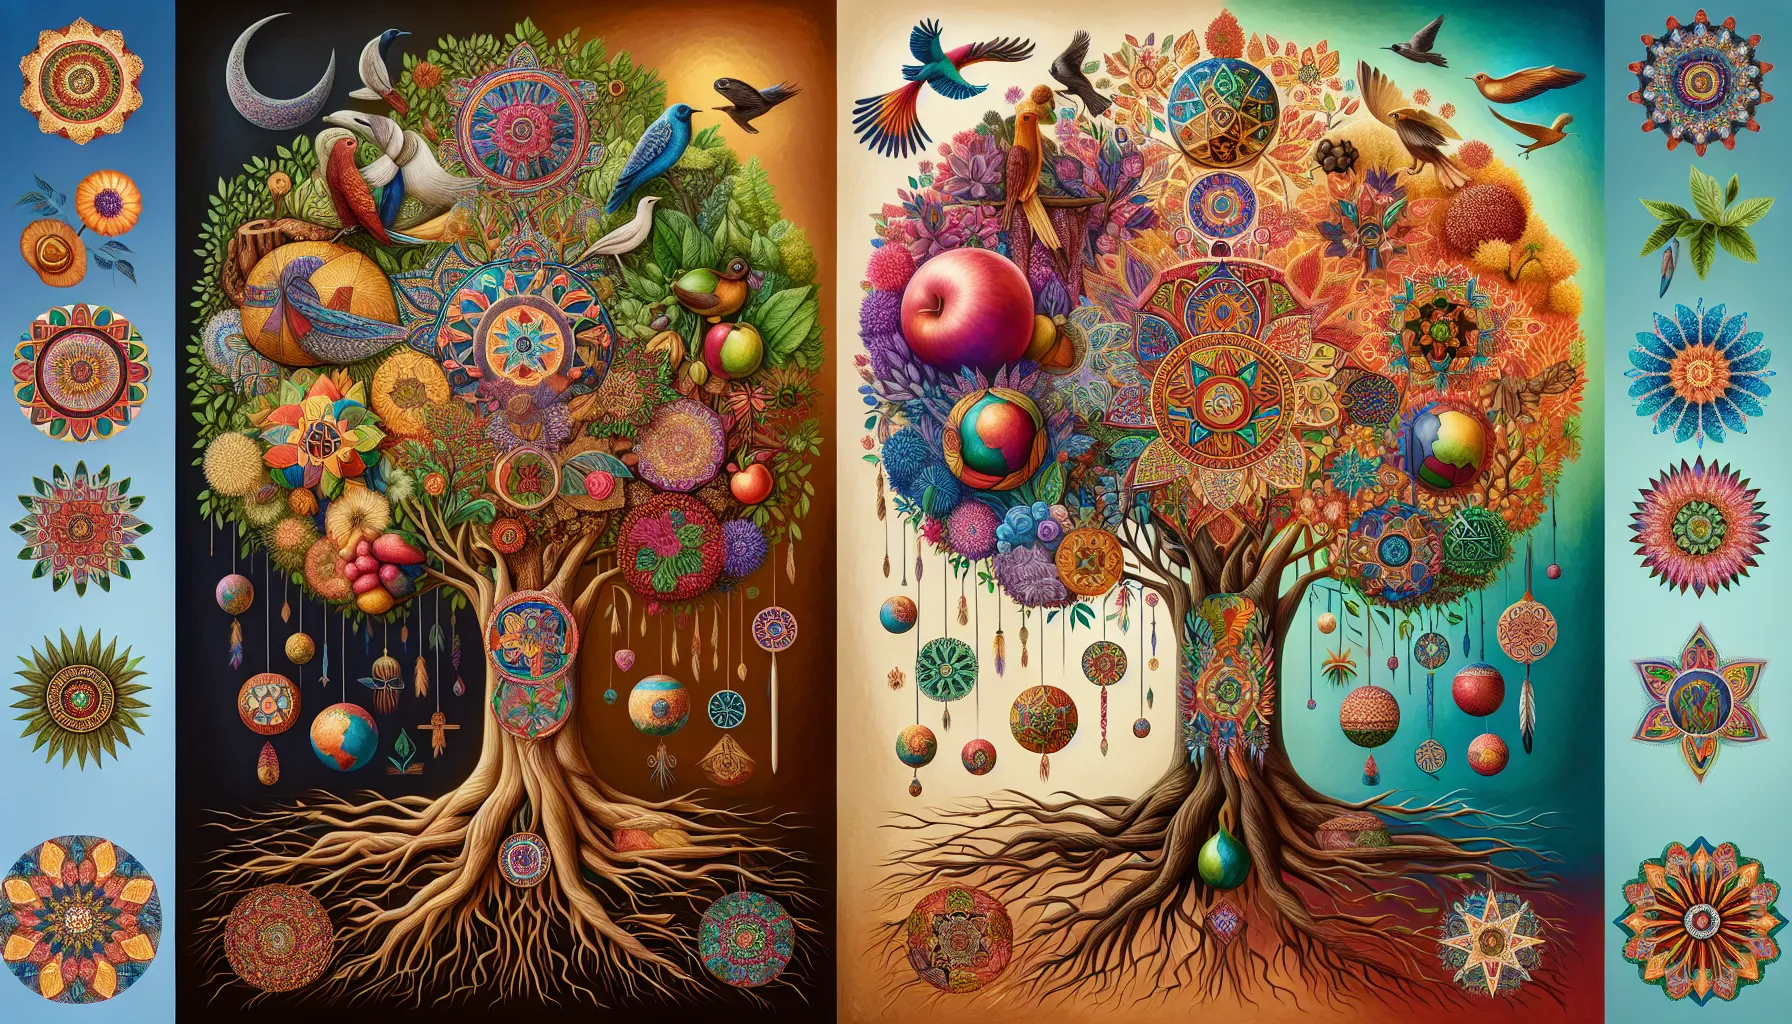 Representación simbólica del árbol de la vida en diferentes sociedades y tradiciones culturales